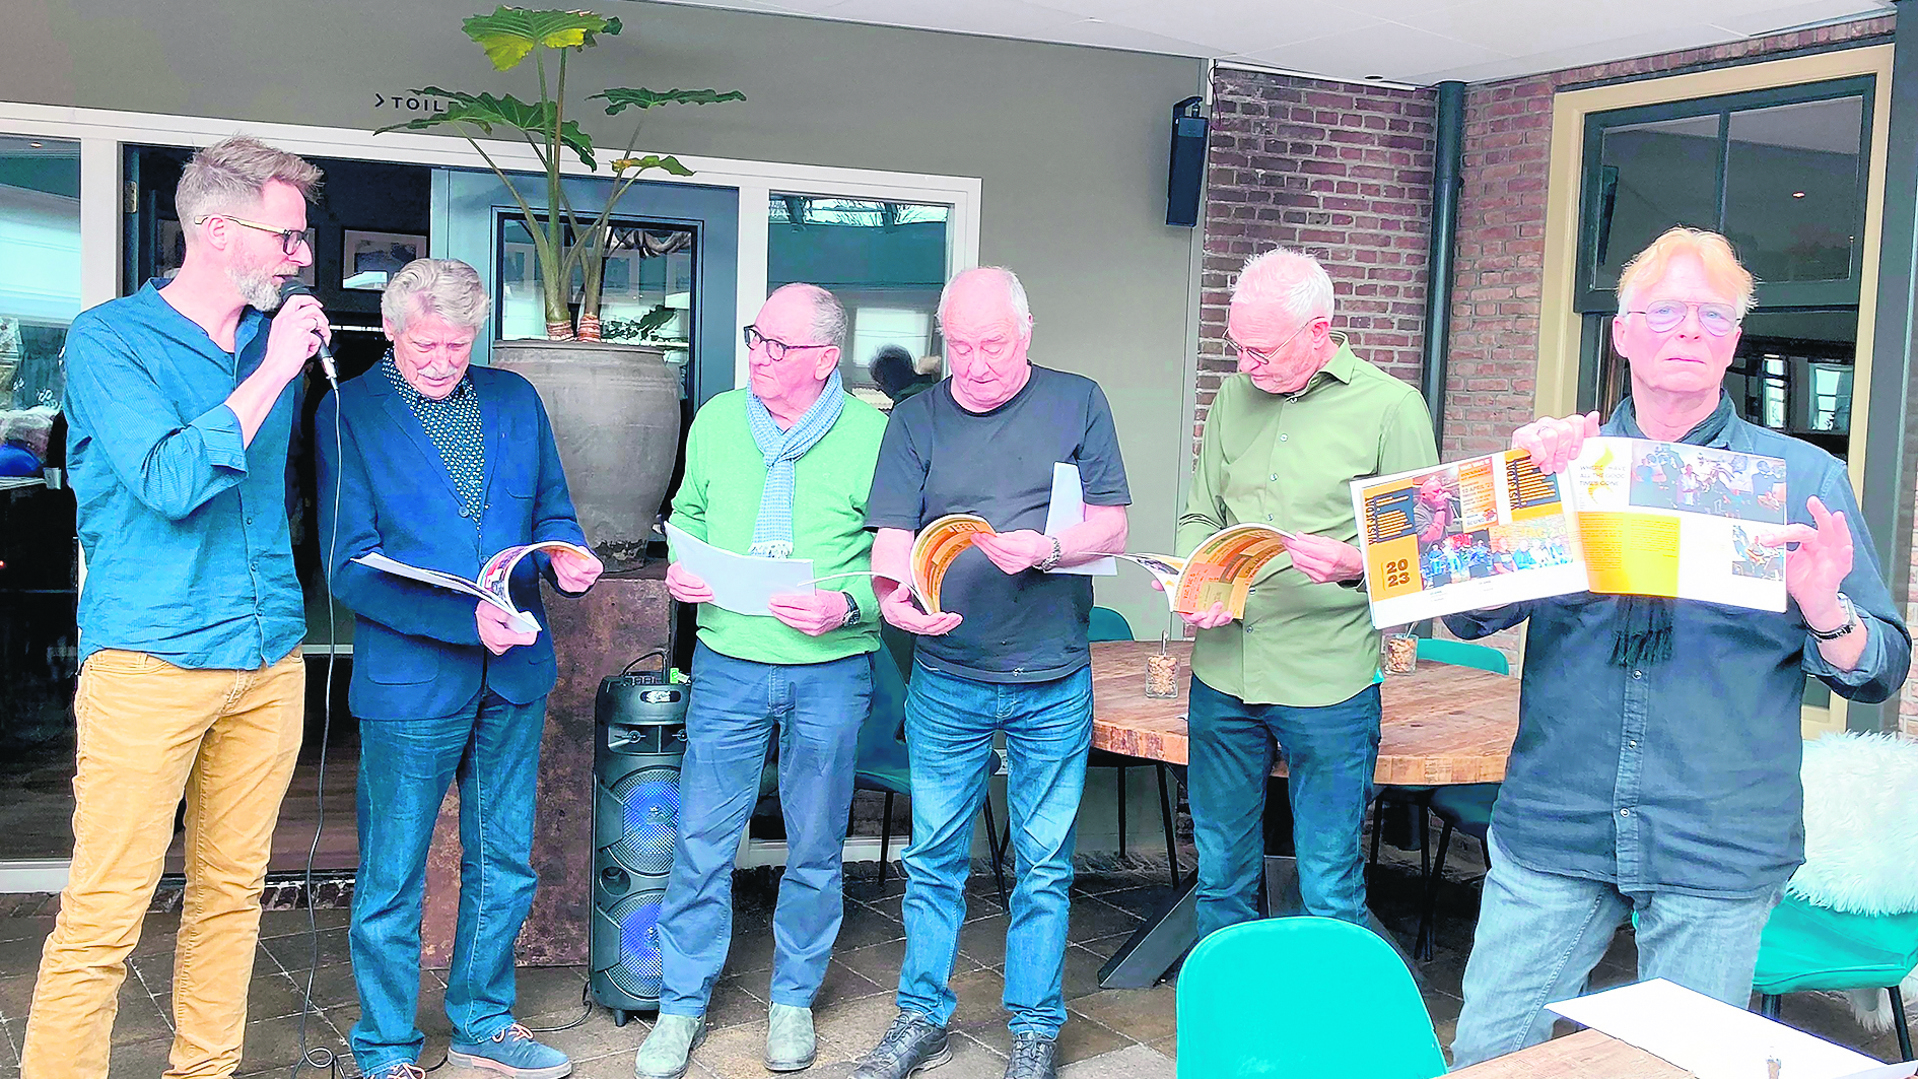 Wim van Baaren jr, Wim van Baaren sr, Bill (Kees) Vermeij, Henk Dekens, Hans Plas, Henri Plas.